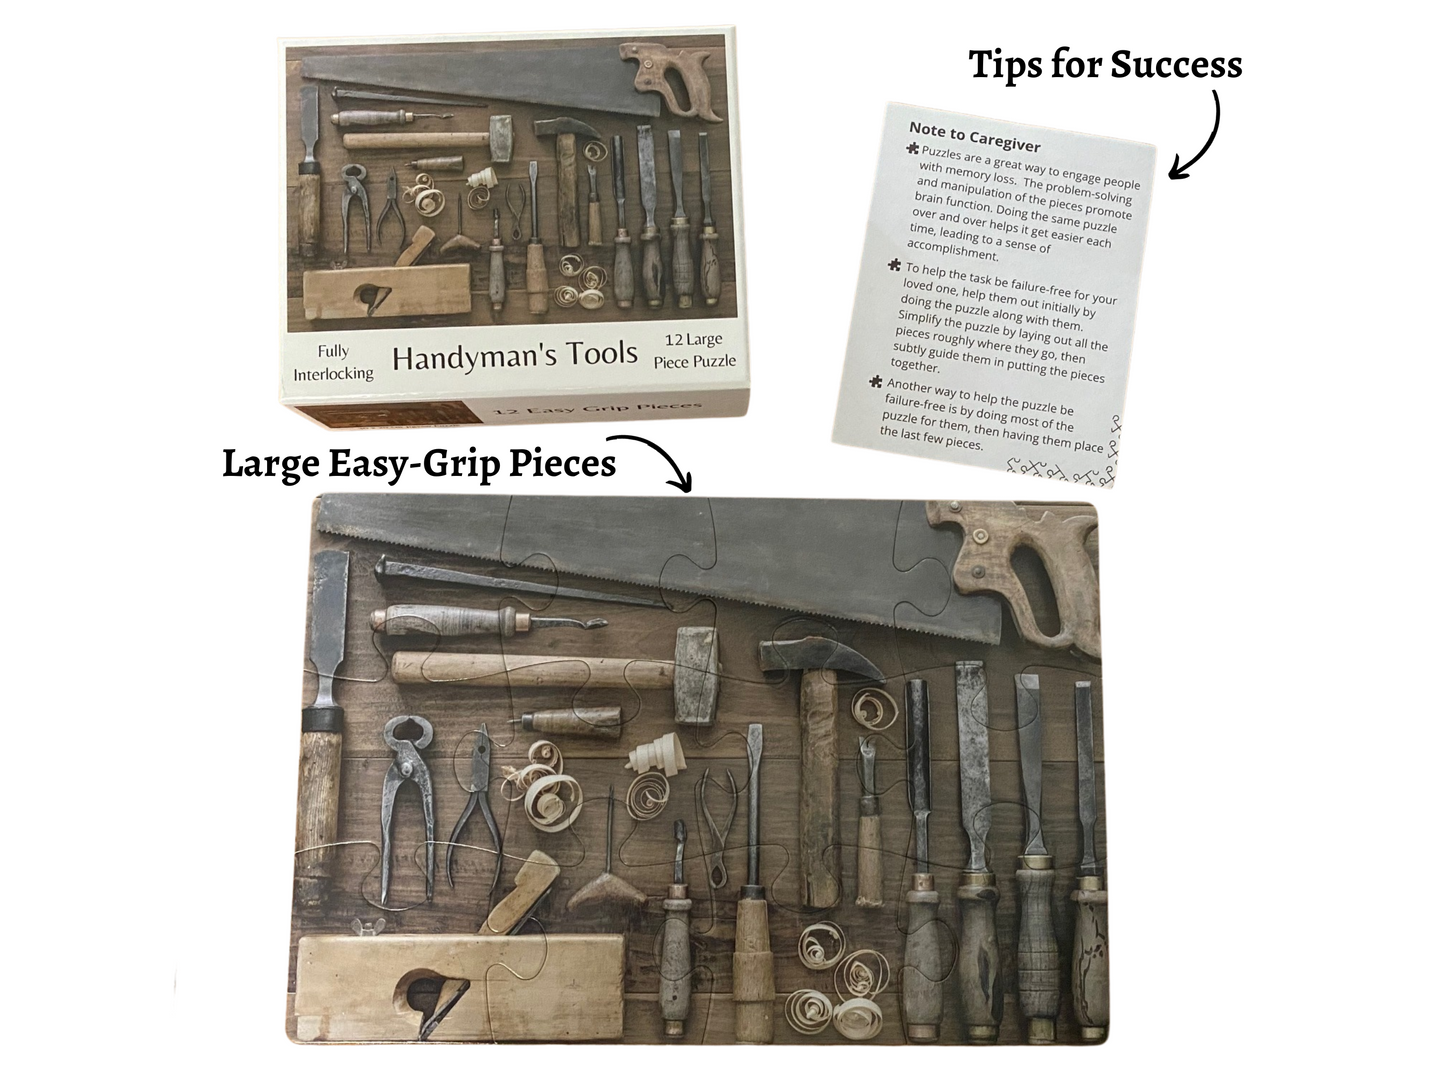 Handyman's Tools 12 Piece Puzzle